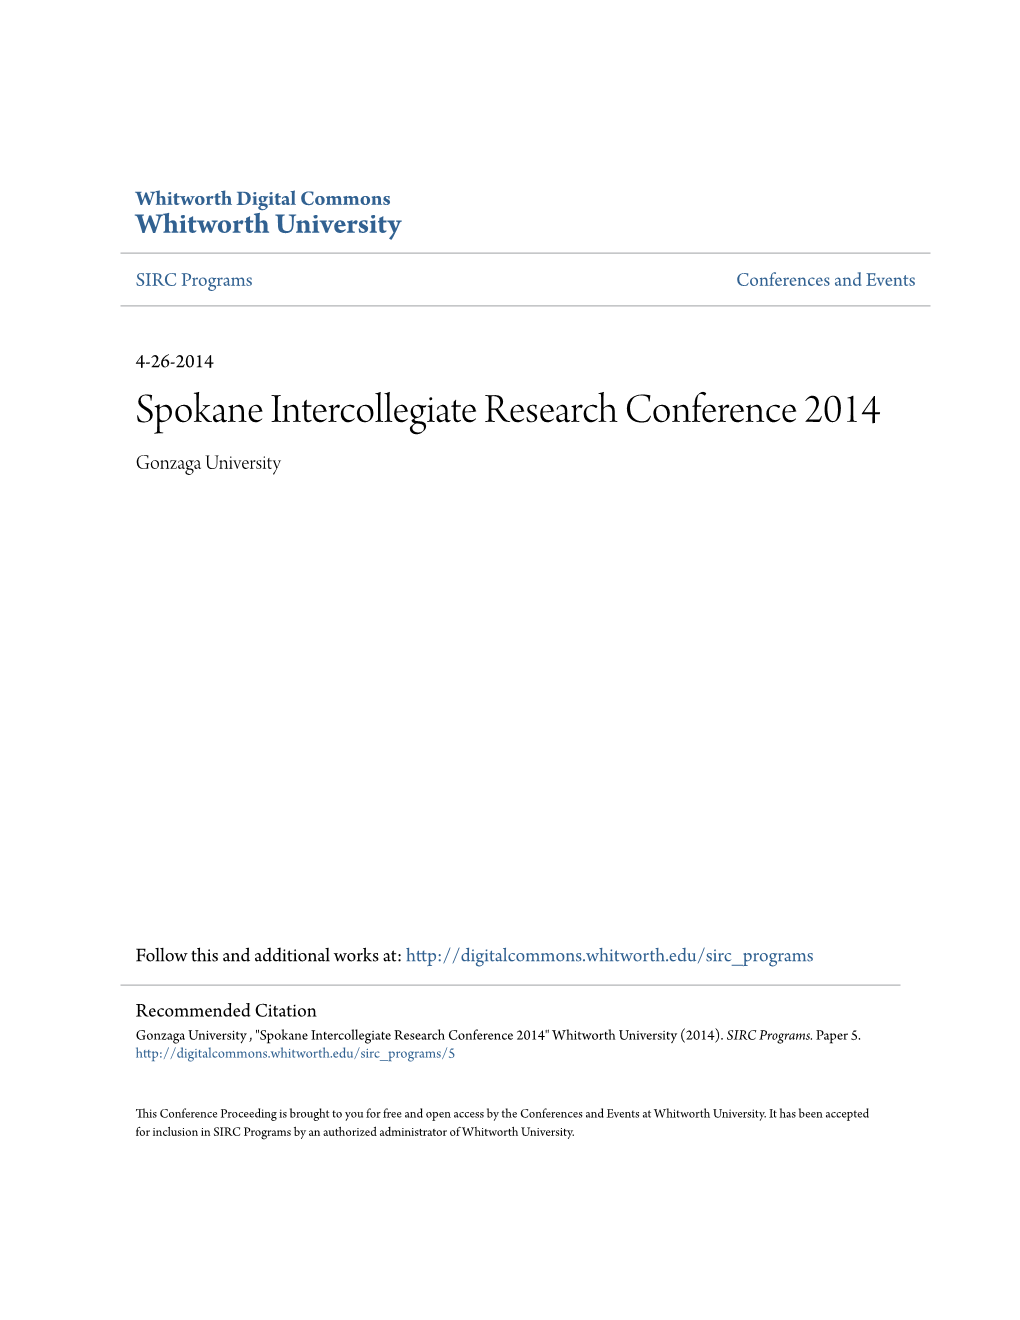 Spokane Intercollegiate Research Conference 2014 Gonzaga University